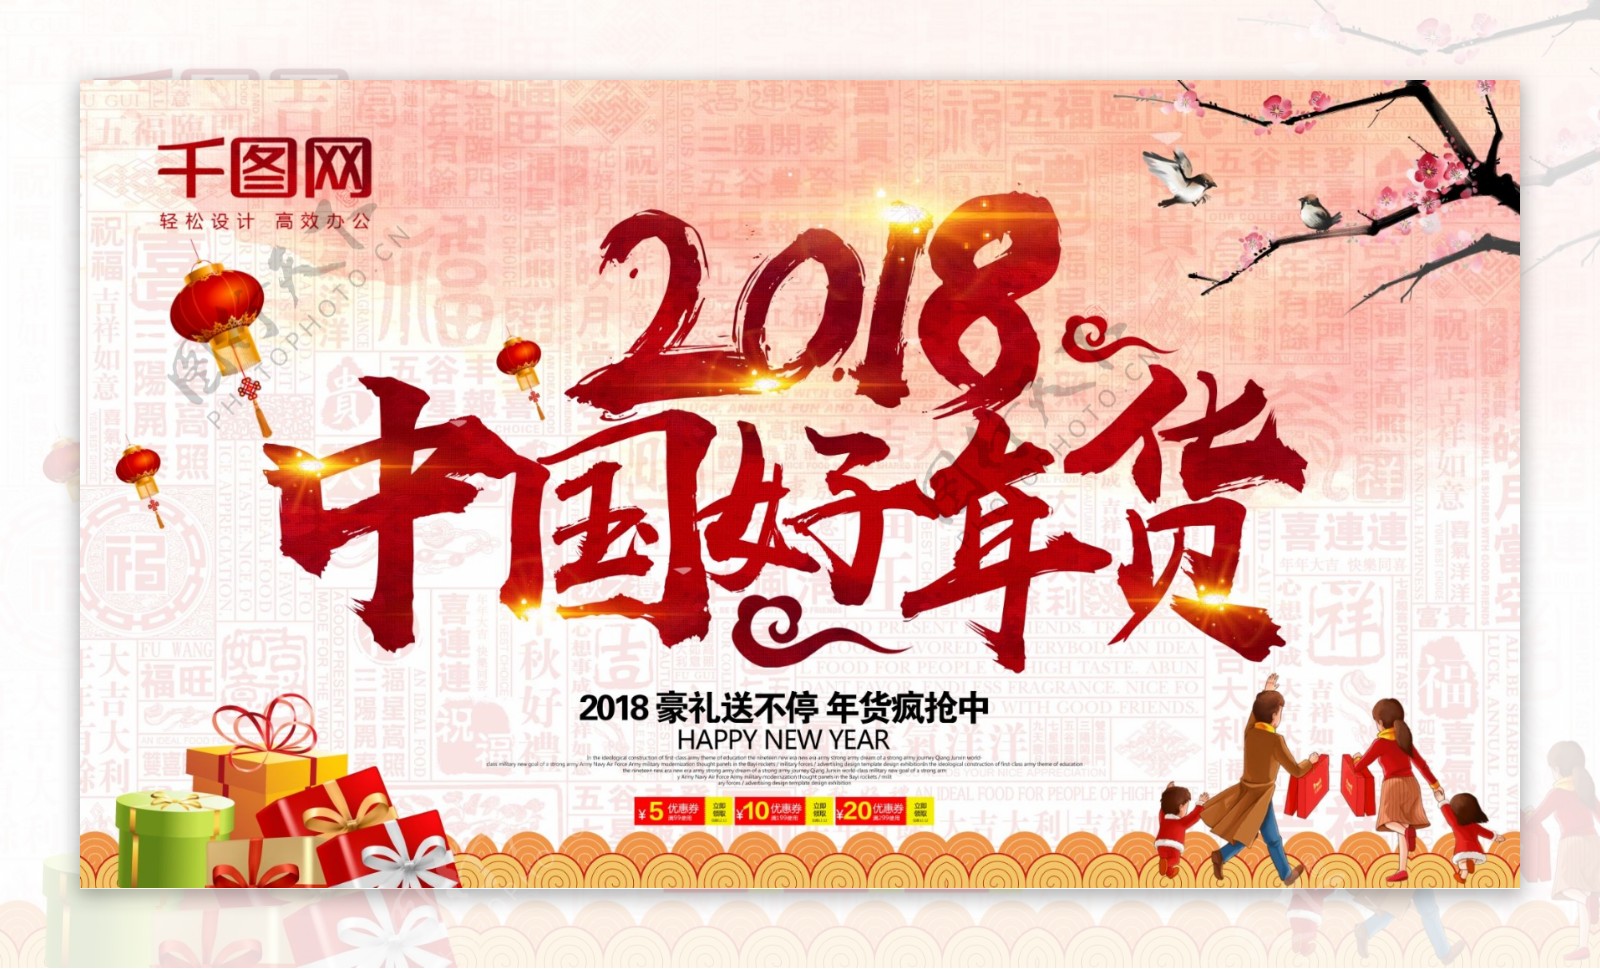 2018春节好年货节日促销展板